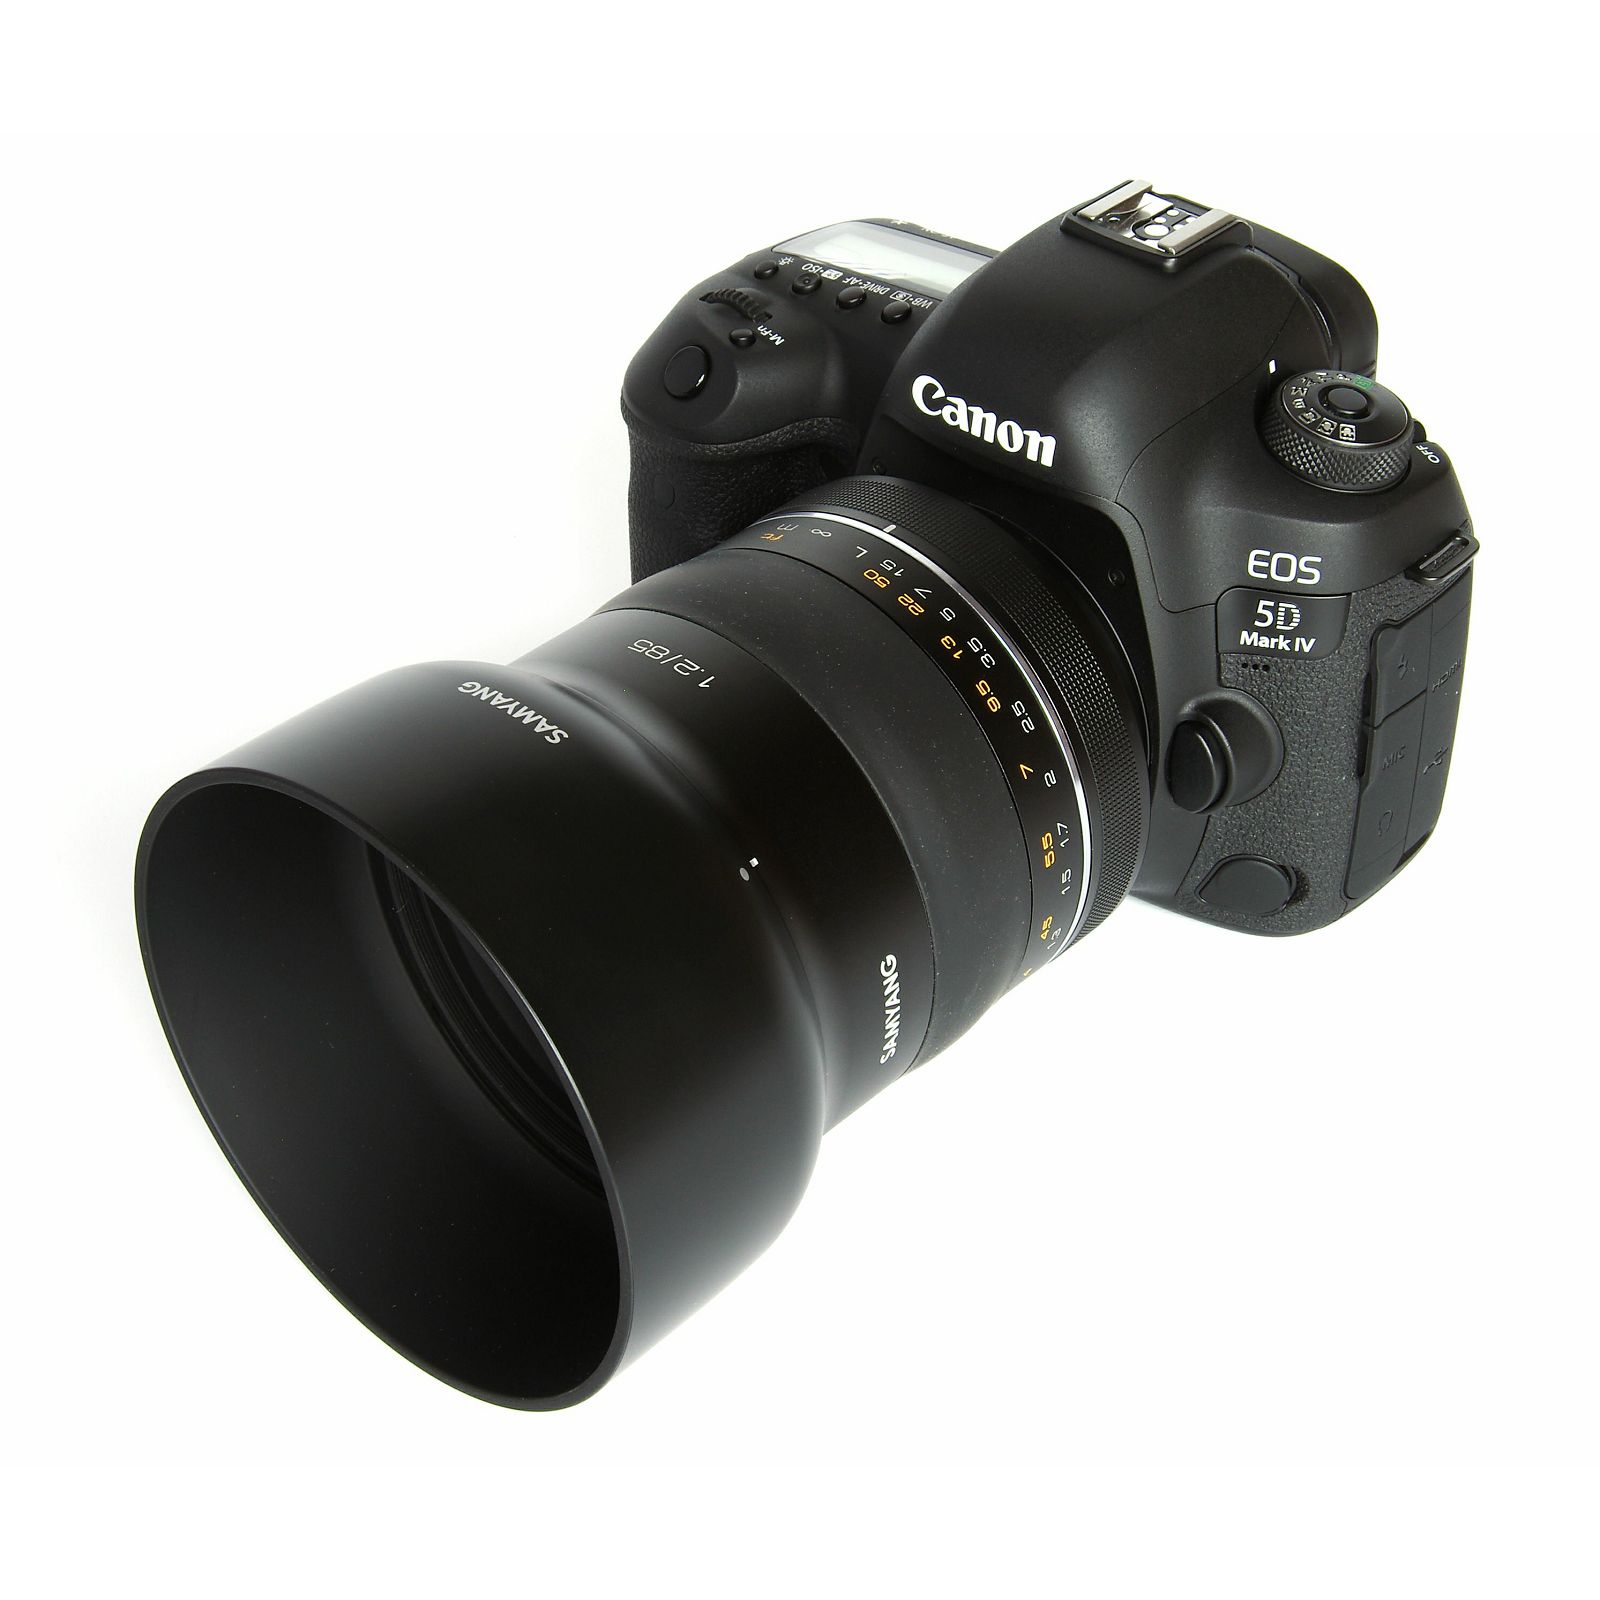 Samyang 85mm f/1.2 XP Premium telefoto objektiv za Canon